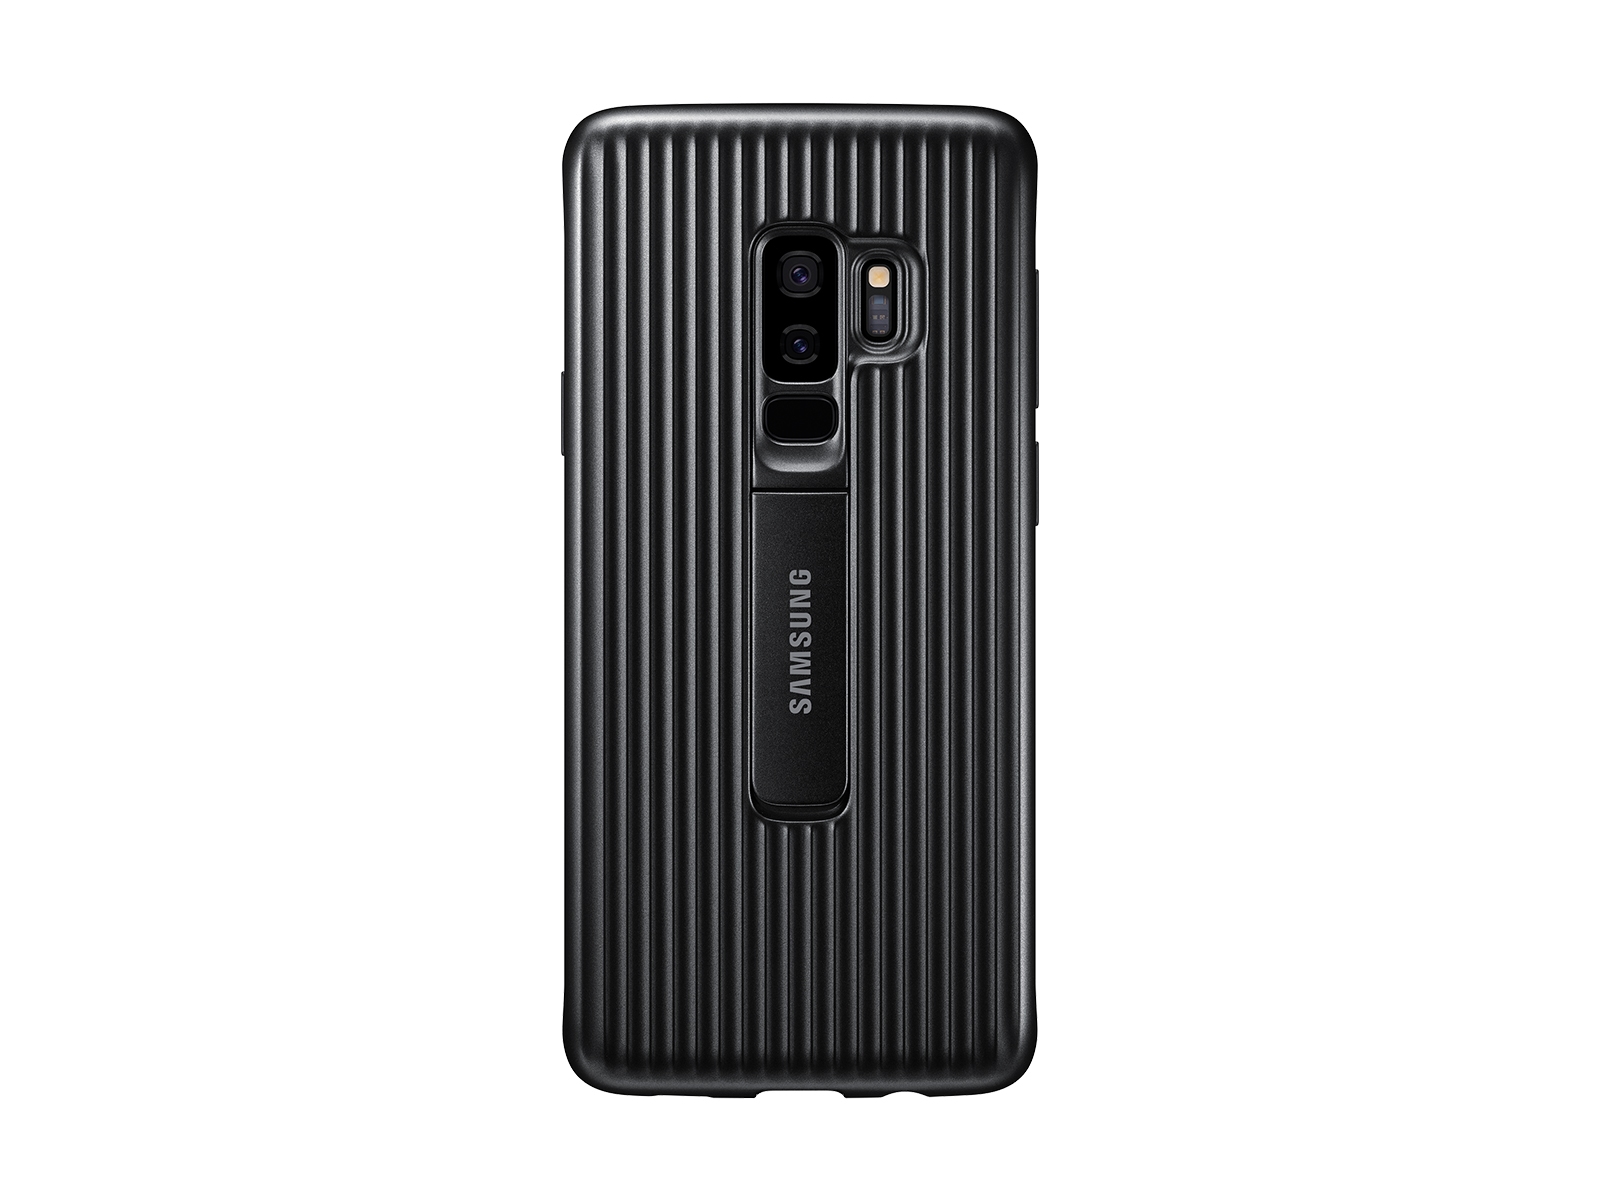 Funda protectora para S9+, accesorios móviles negros - EF-RG965CBEGUS | Samsung EE.UU